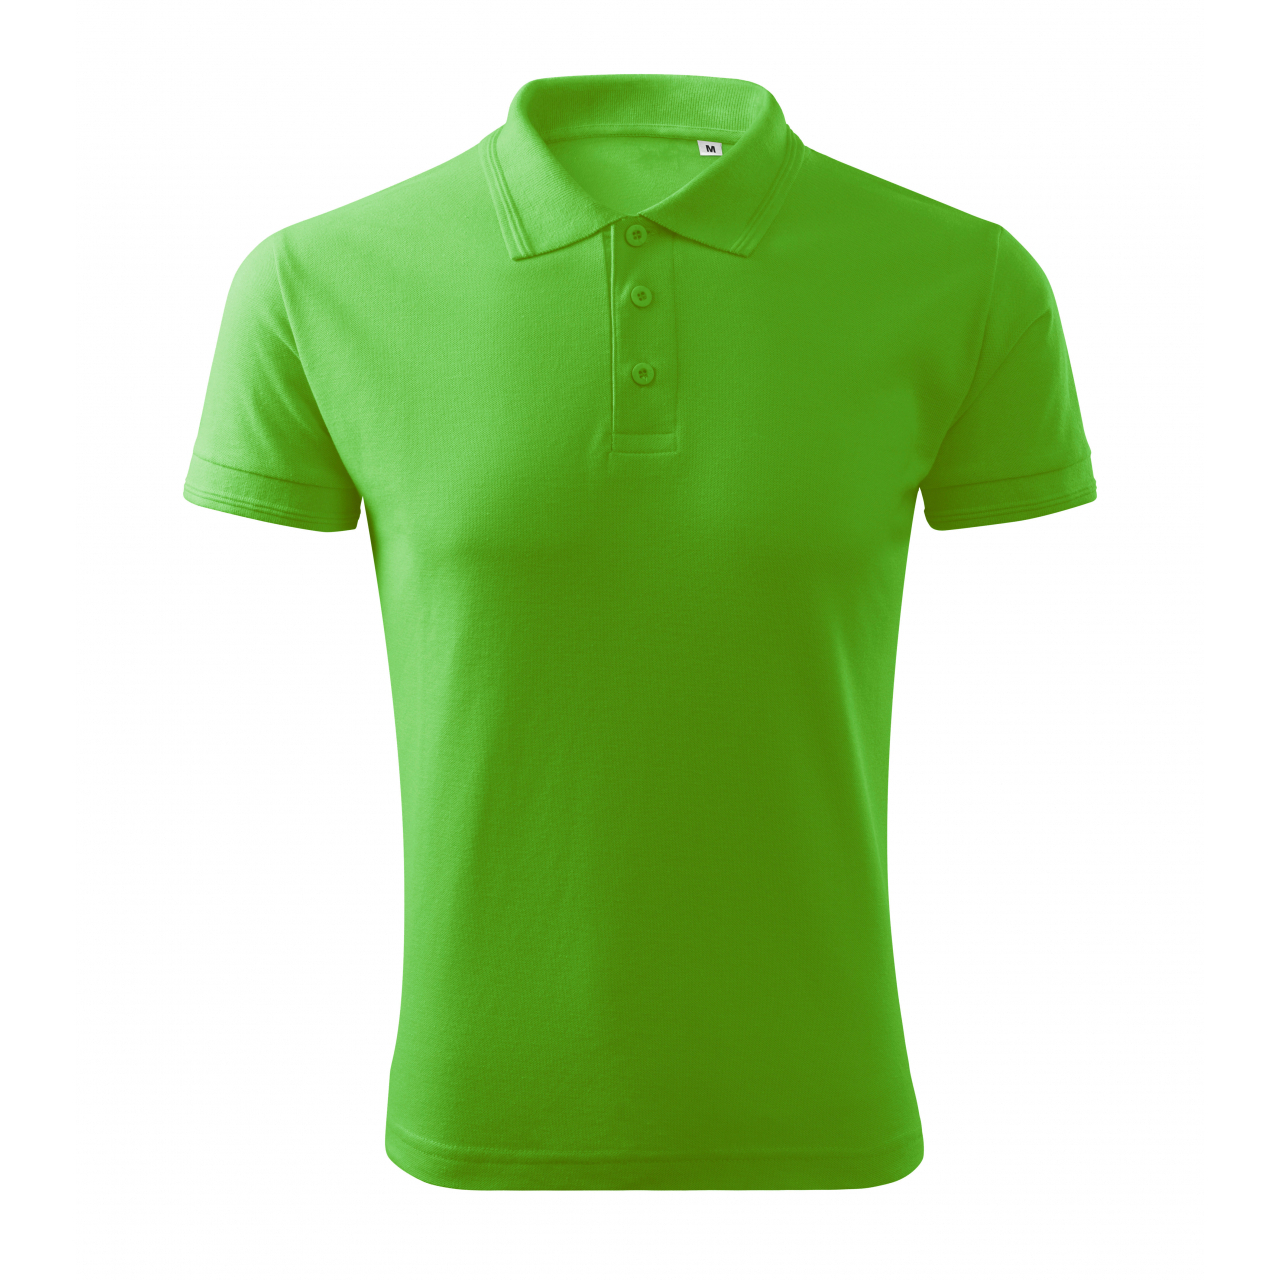 Polokošile pánská Malfini Pique Polo Free - středně zelená, XL